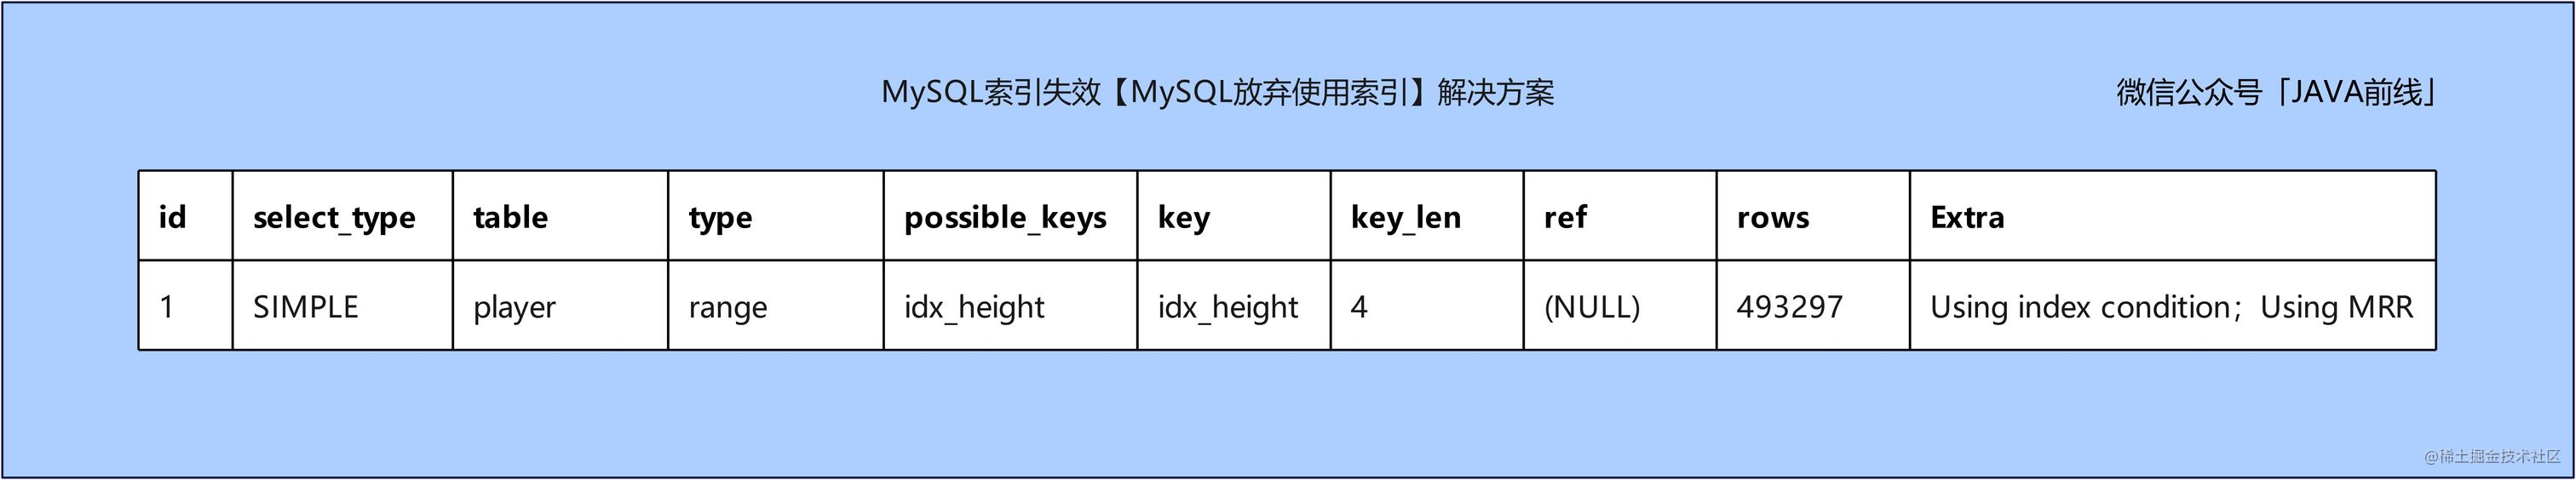 06 索引失效_MySQL放弃使用索引_解决方案_2.jpg